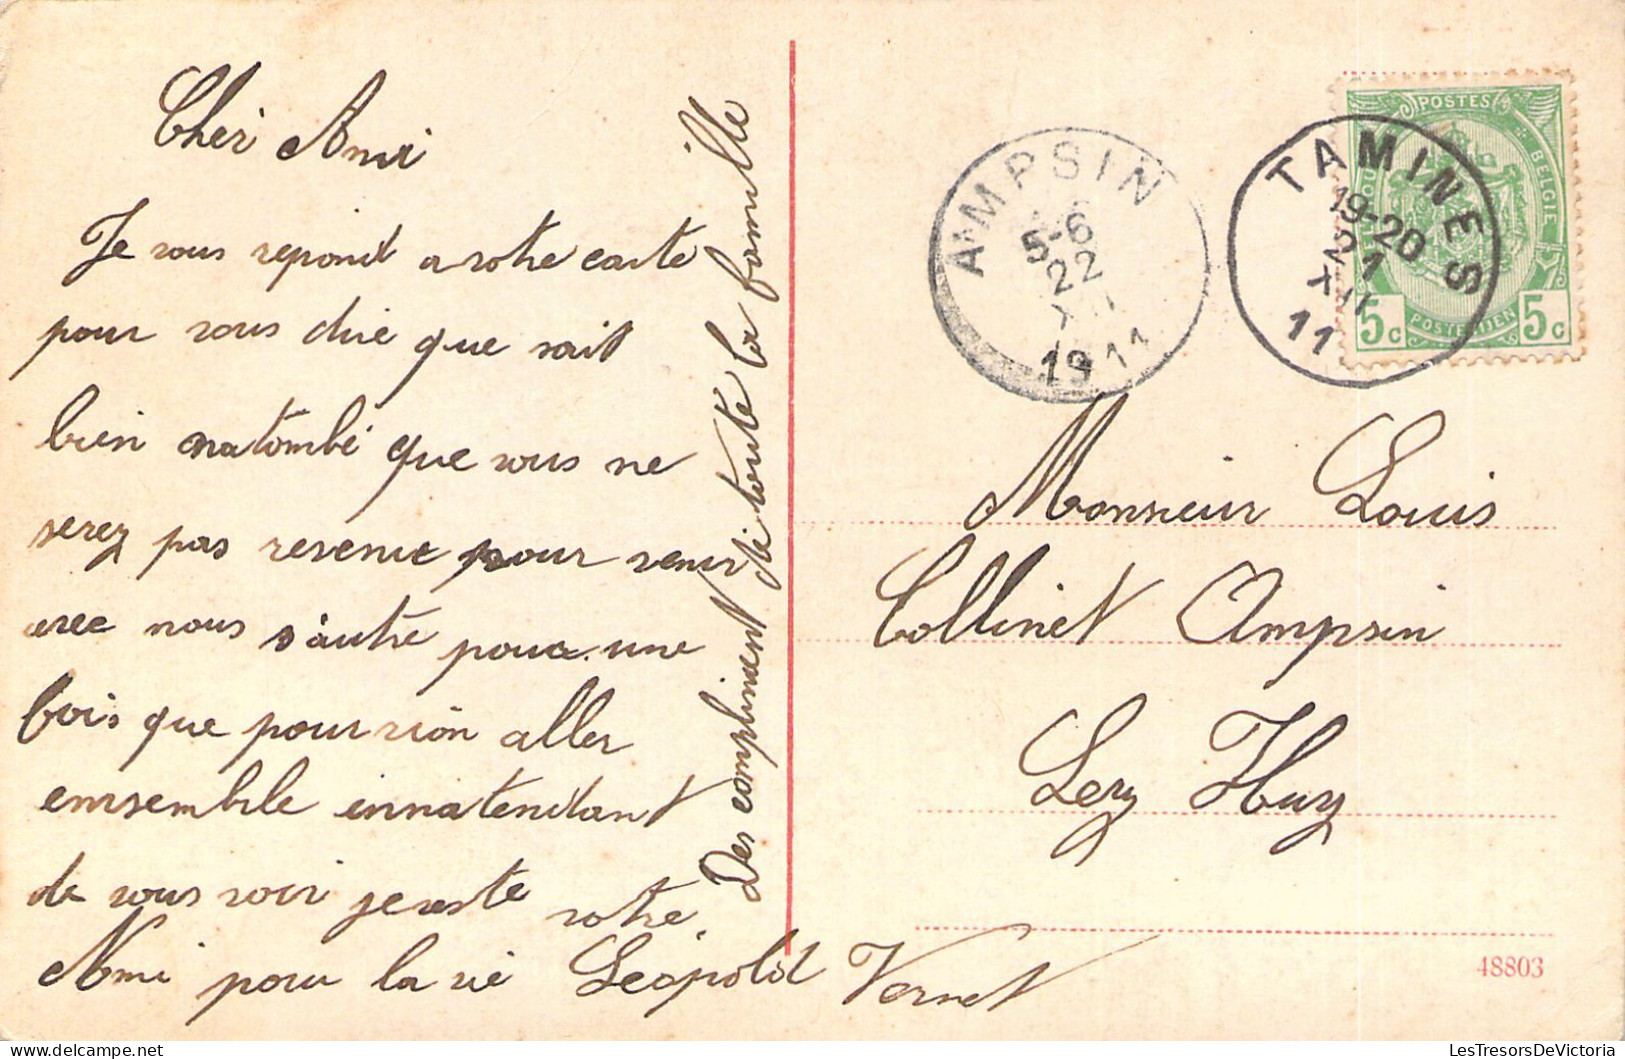 MILITARIA - Uniforme - Infanterie - Carte Postale Ancienne - Uniformen